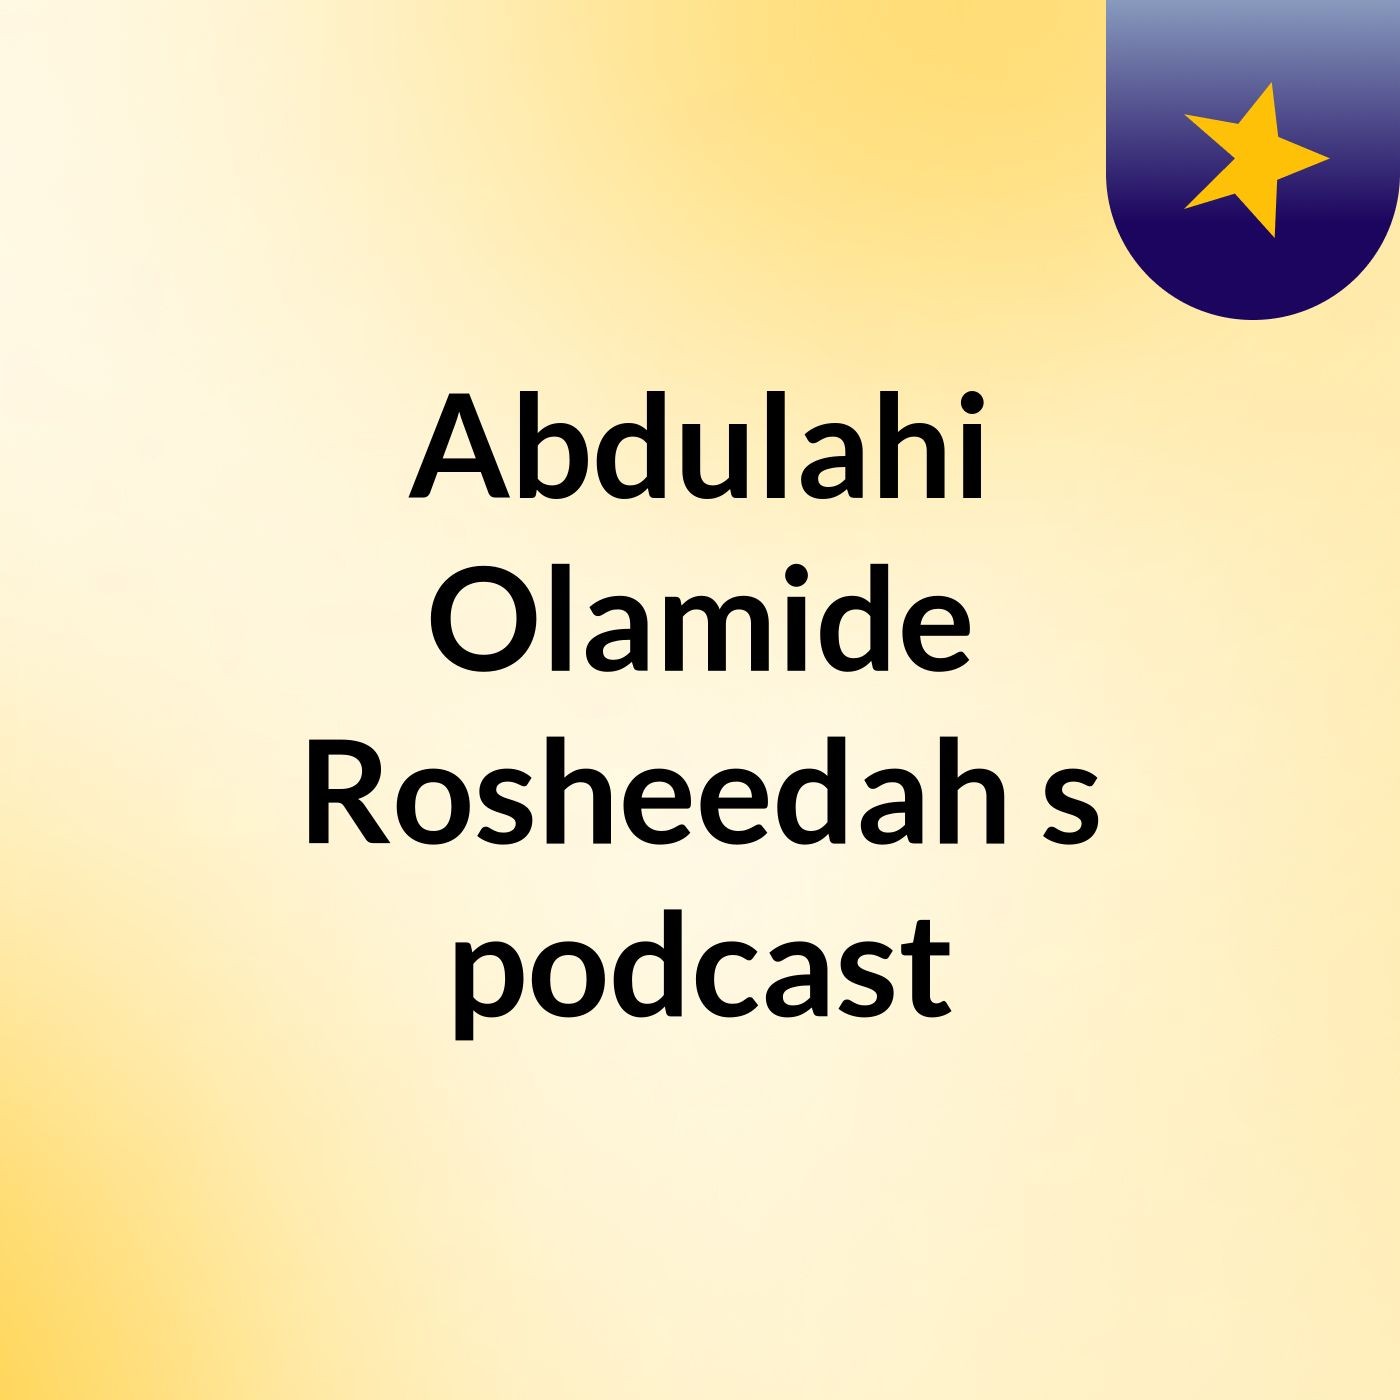 Abdulahi Olamide Rosheedah's podcast